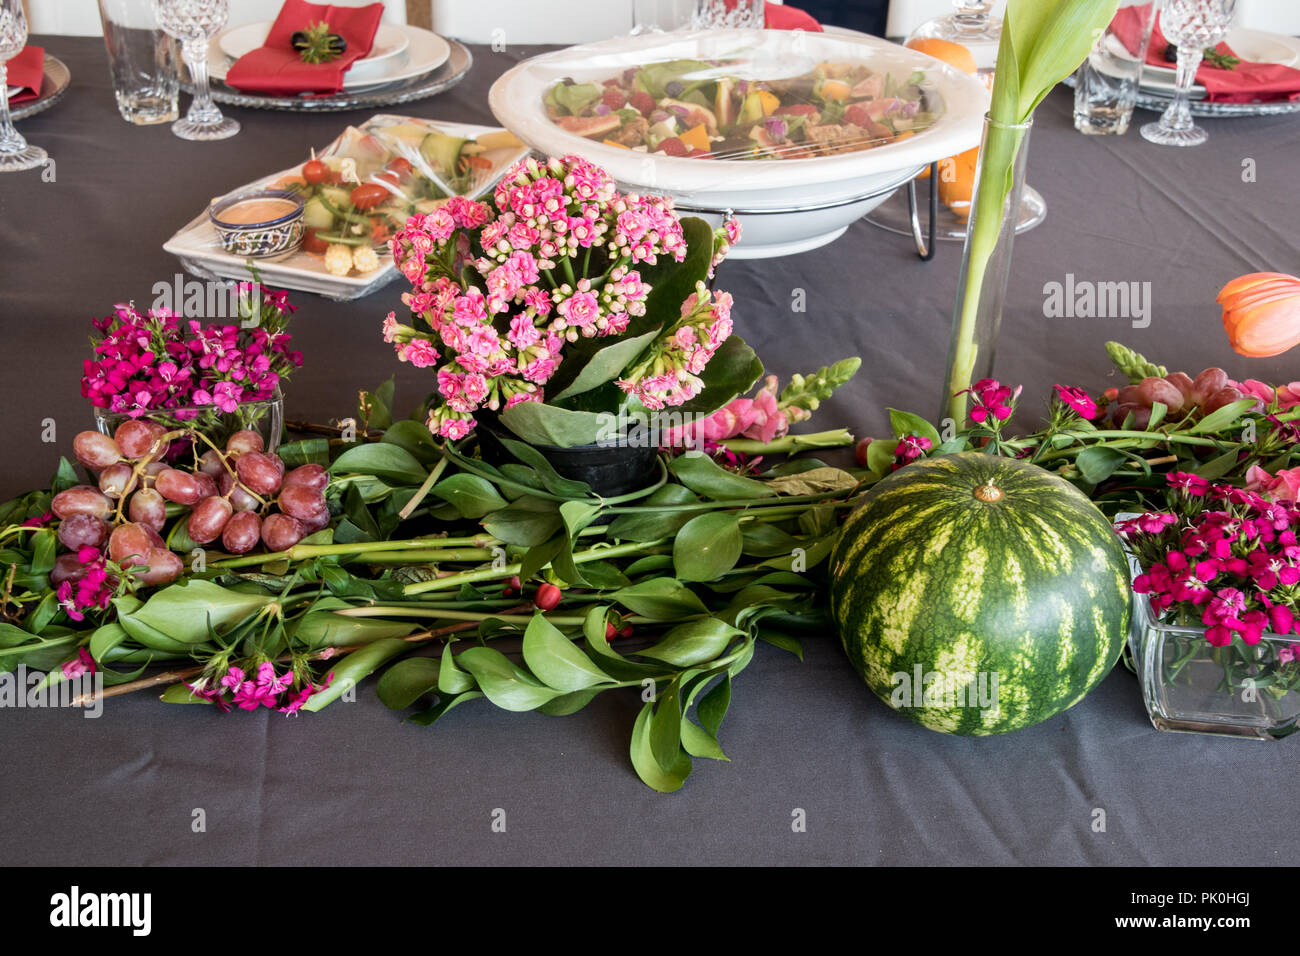 La table du déjeuner avec affichage floral de jolies fleurs aux couleurs orange et rose arrangements rougeâtre en premier plan avec une pastèque ronde & raisins Banque D'Images